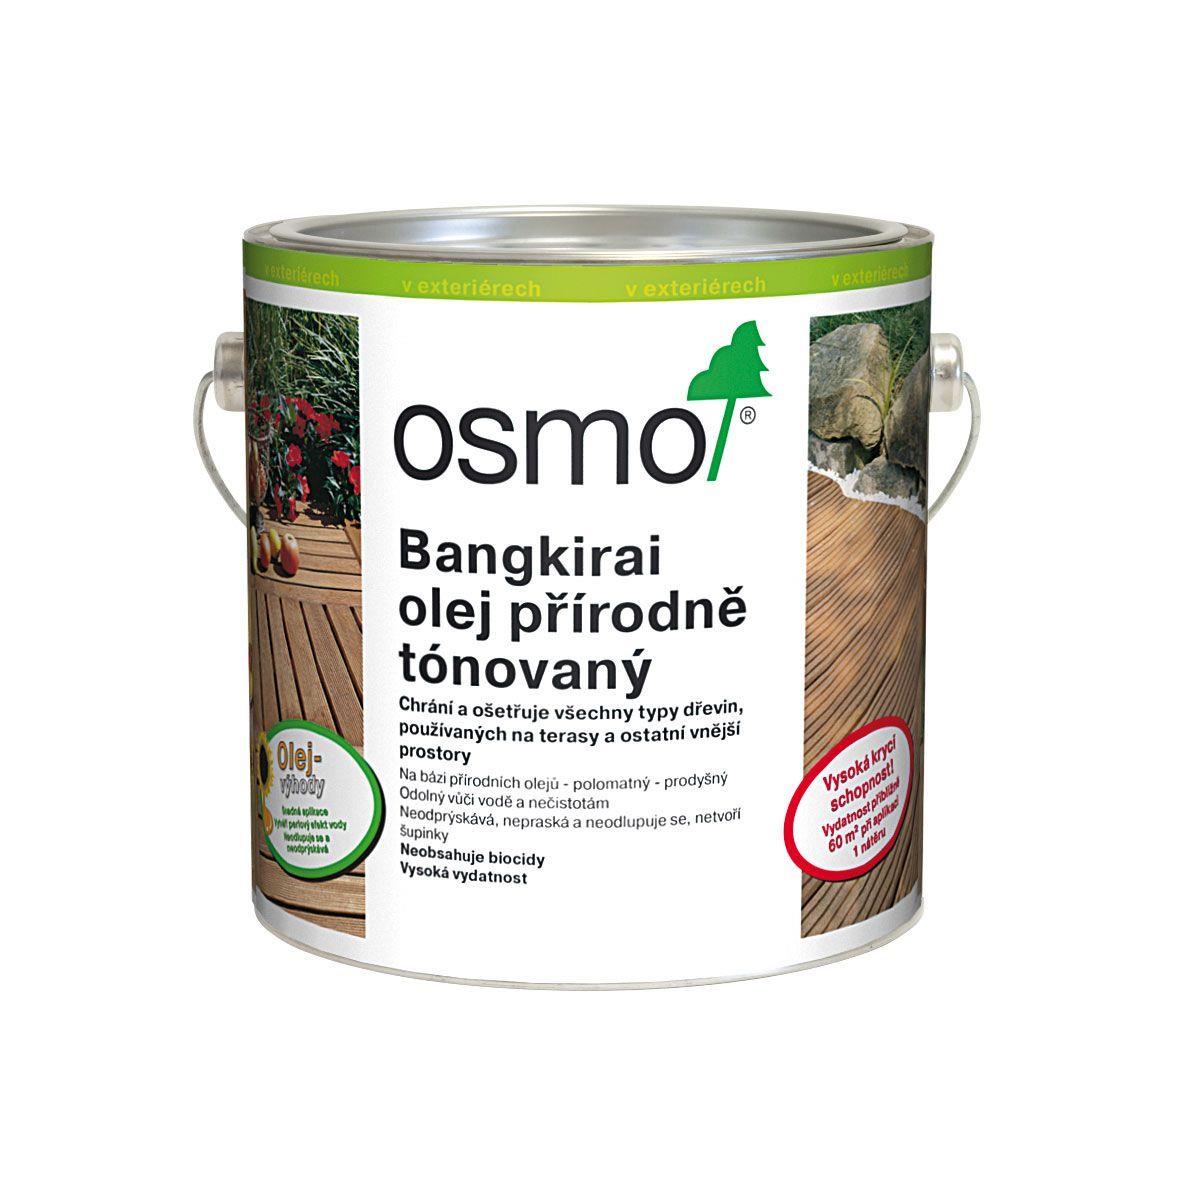 OSMO Terasový olej 006 bangkirai 2,5l - přírodní